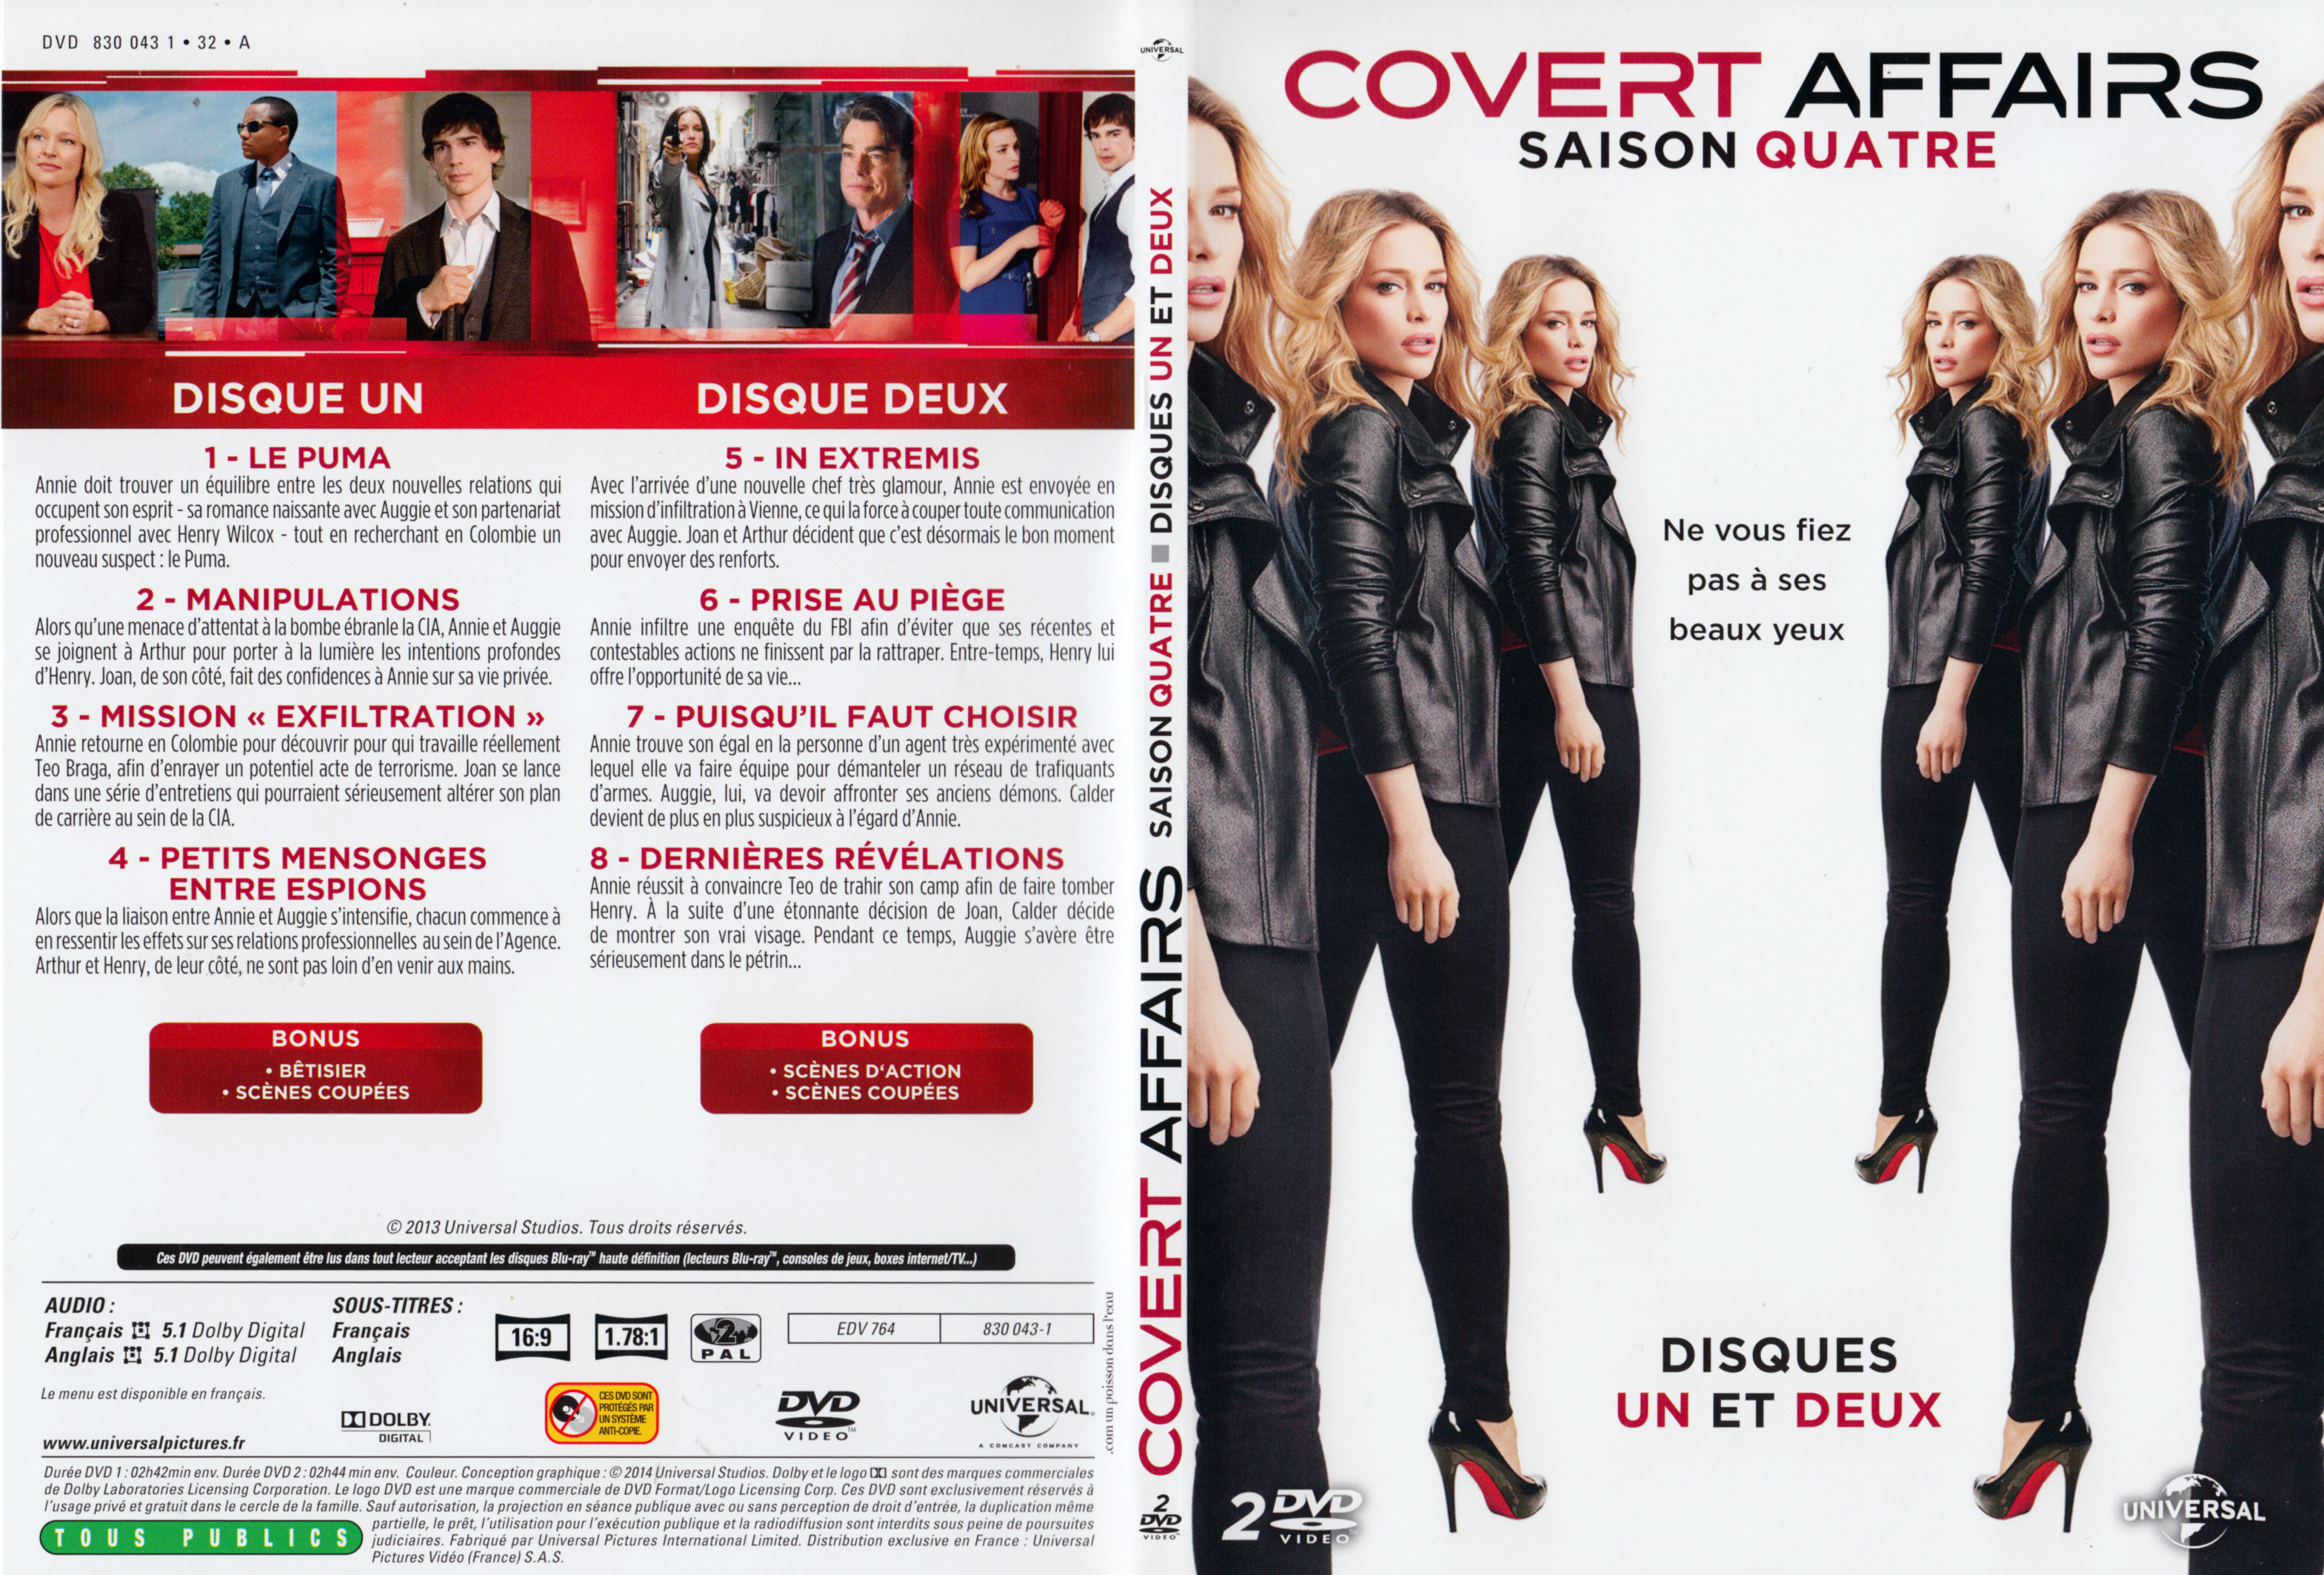 Jaquette DVD Covert Affairs Saison 4 DVD 1